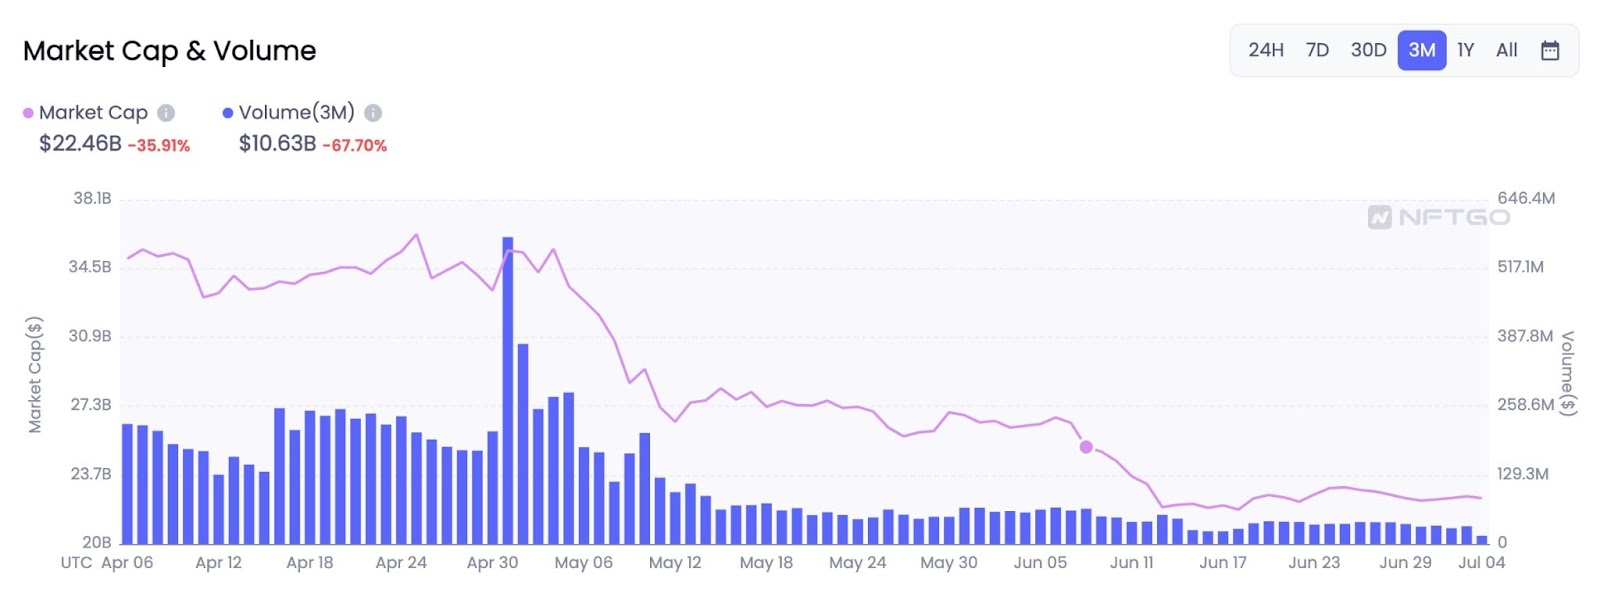 Wykres przedstawiający wskaźnik kapitalizacji rynkowej oraz wolumen w ciągu ostatnich trzech miesięcy. Źródło: nftgo.io/analytics/market-overview